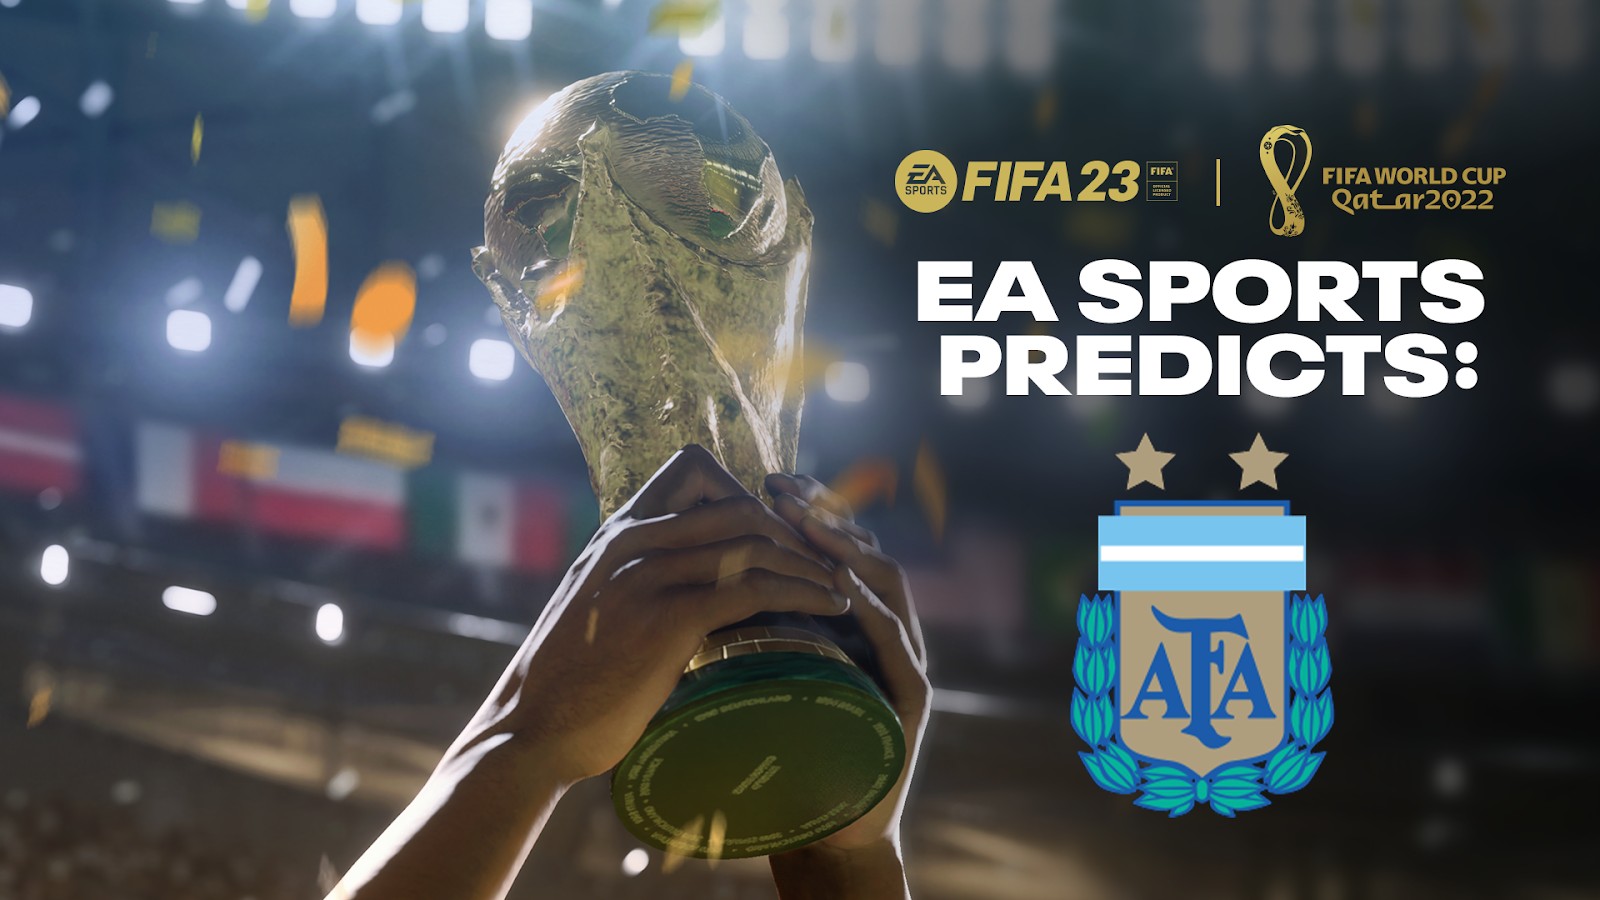 FIFA 23 prevê Argentina como campeã da Copa do Mundo de 2022